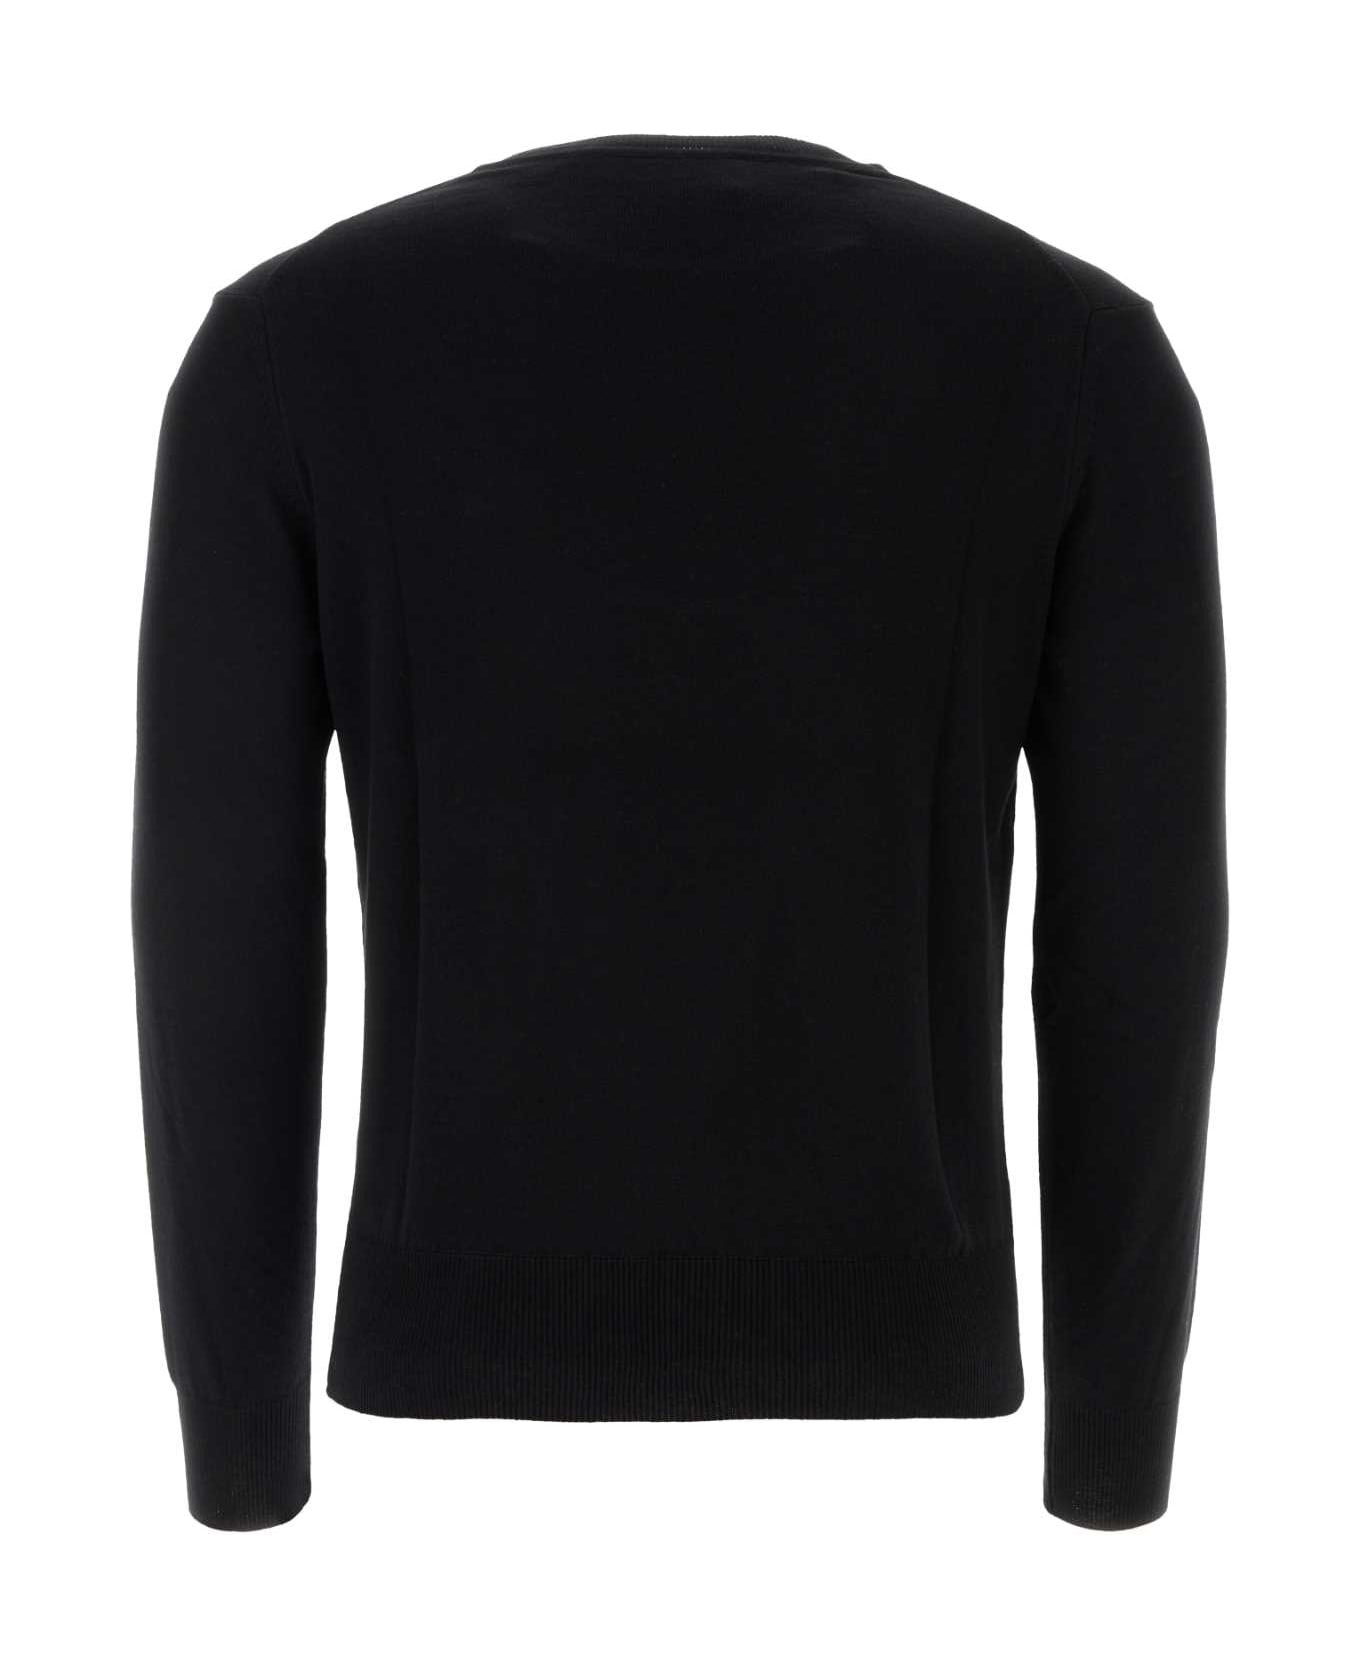 Vivienne Westwood Black Cotton Blend Sweater - Black ニットウェア